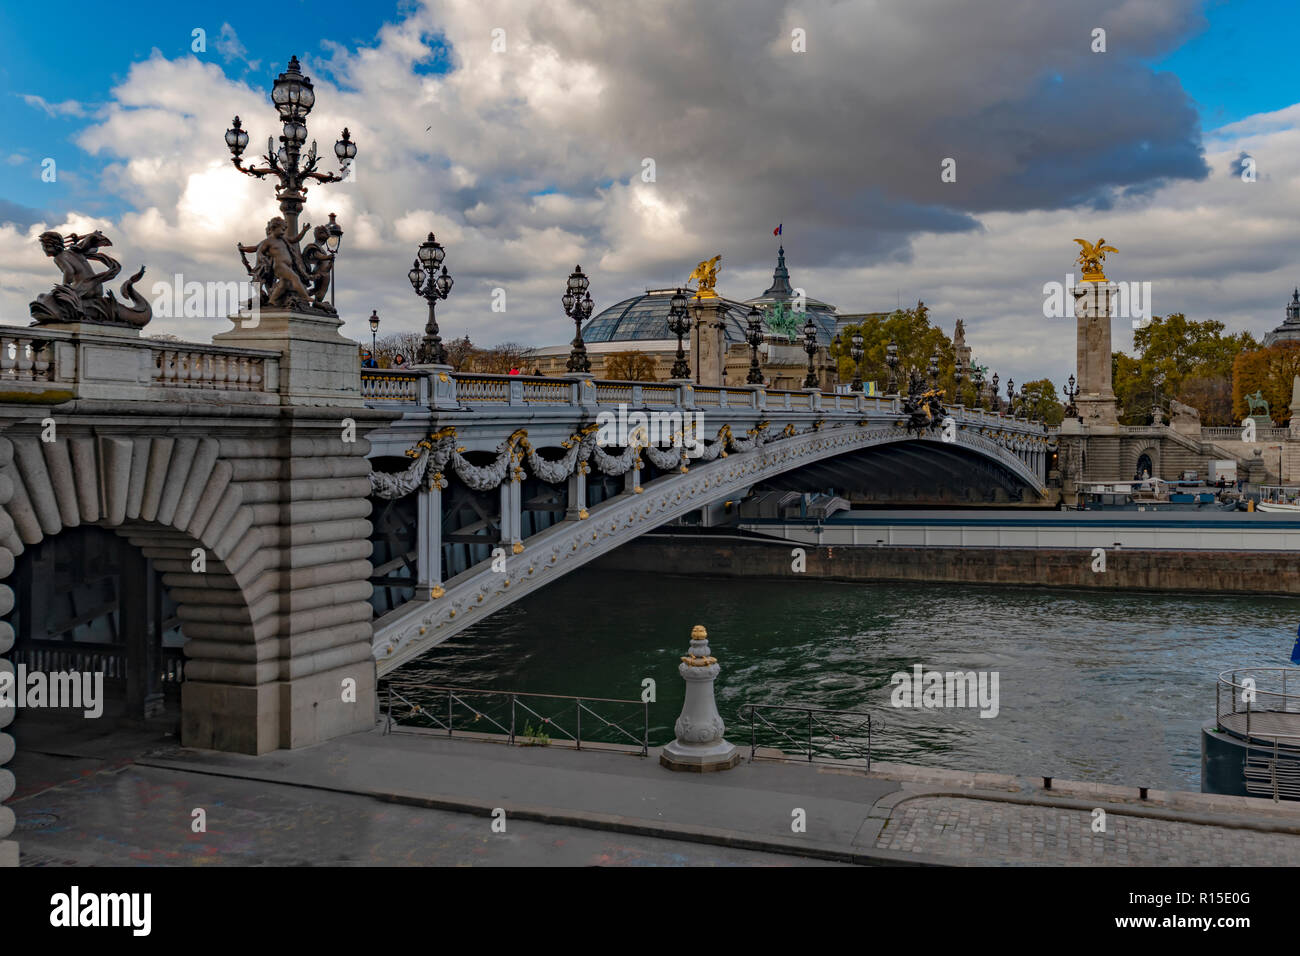 Il Pont Alexandre III oltre la Senna è un deck ponte di arco che si estende oltre la Senna a Parigi. Esso collega il quartiere degli Champs-Élysées con quelle di Foto Stock